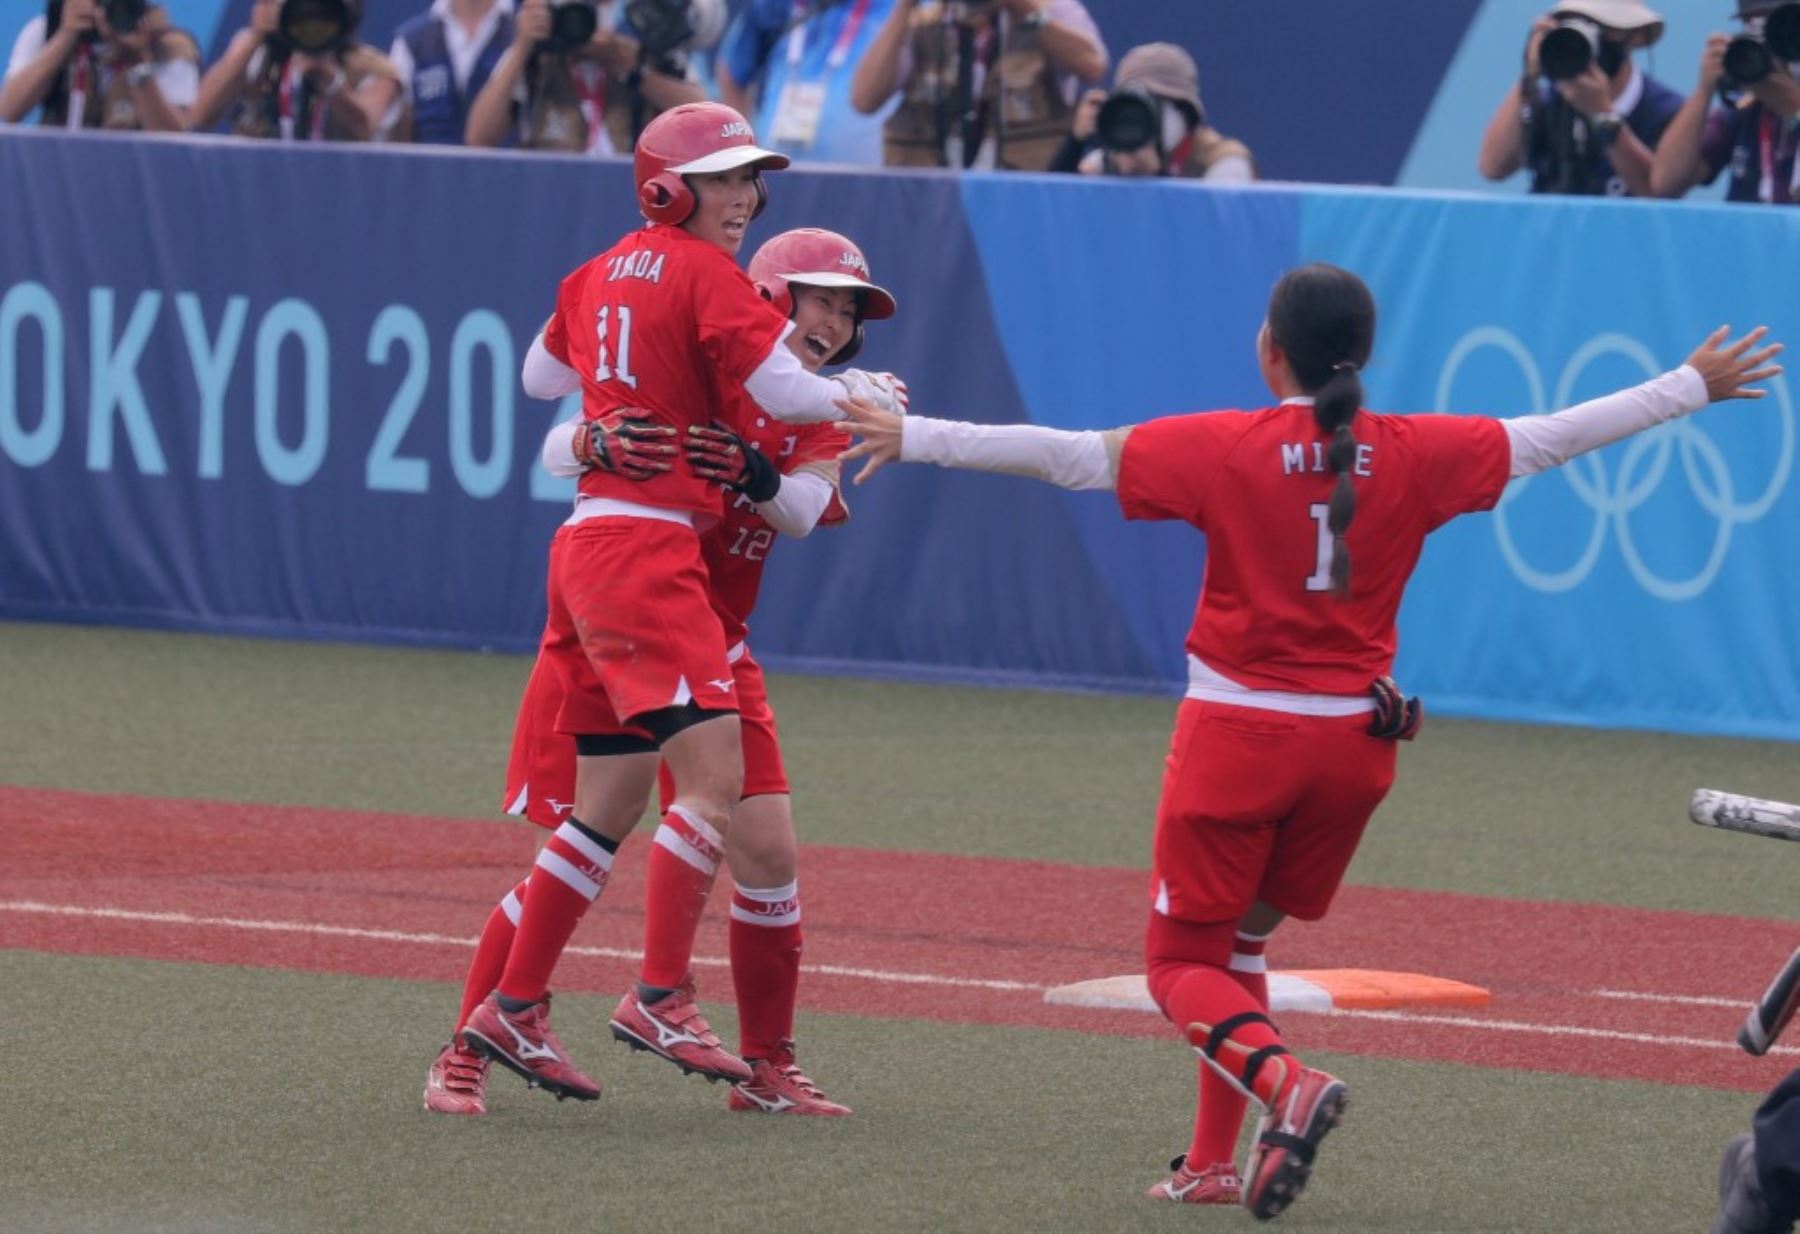 Japón sumó su segunda victoria en sóftbol femenino al derrotar a México